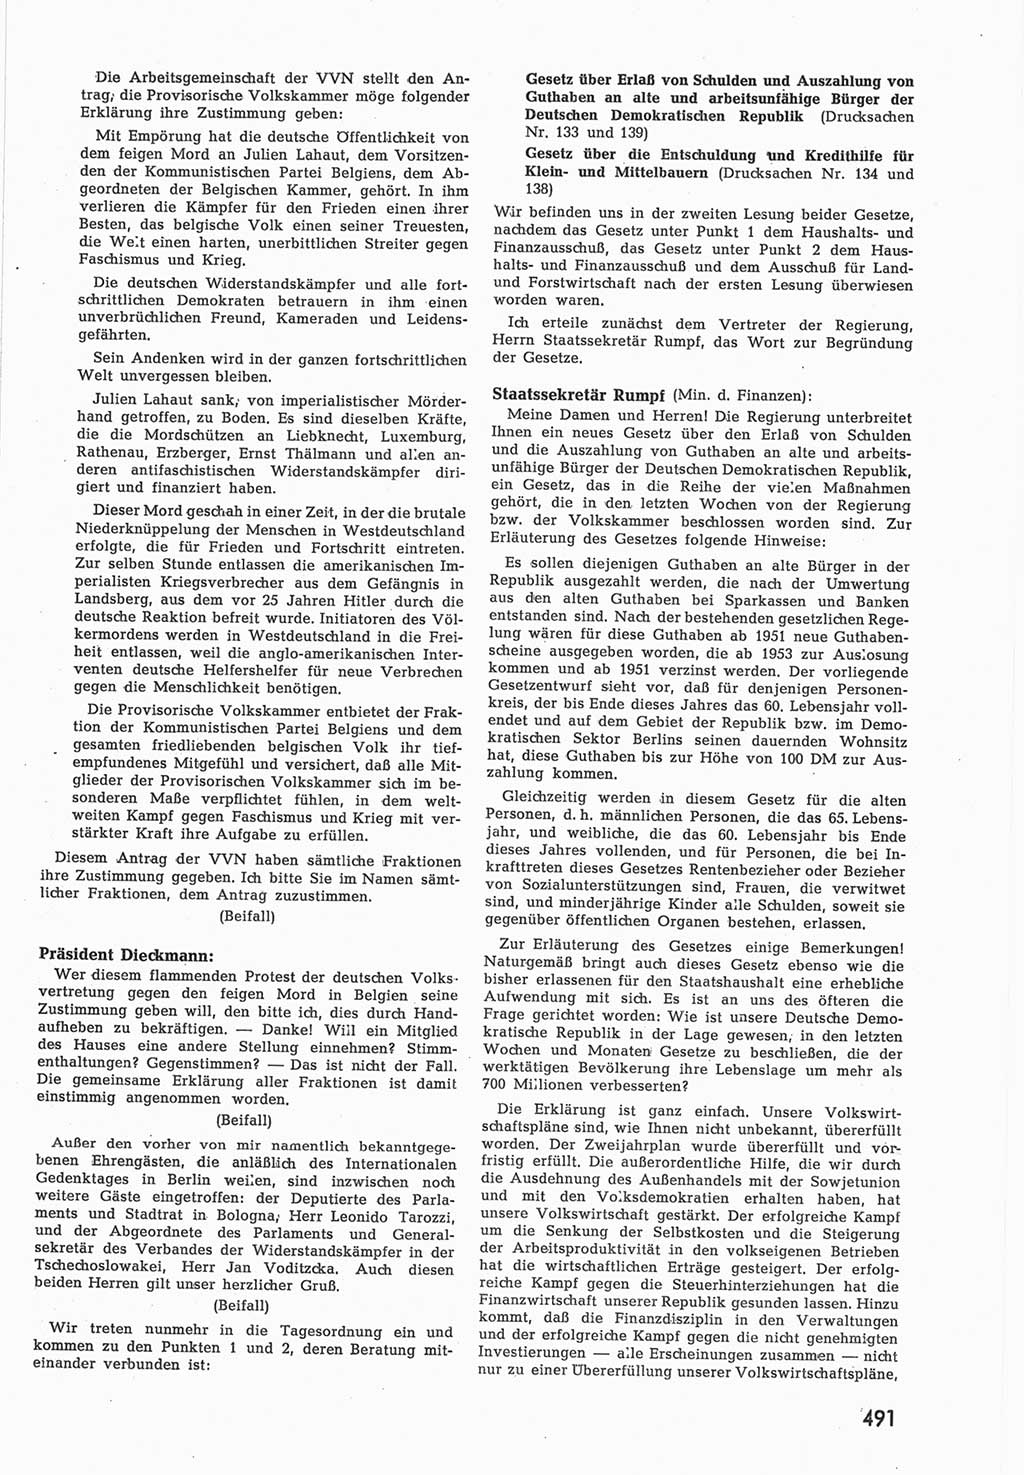 Provisorische Volkskammer (VK) der Deutschen Demokratischen Republik (DDR) 1949-1950, Dokument 509 (Prov. VK DDR 1949-1950, Dok. 509)